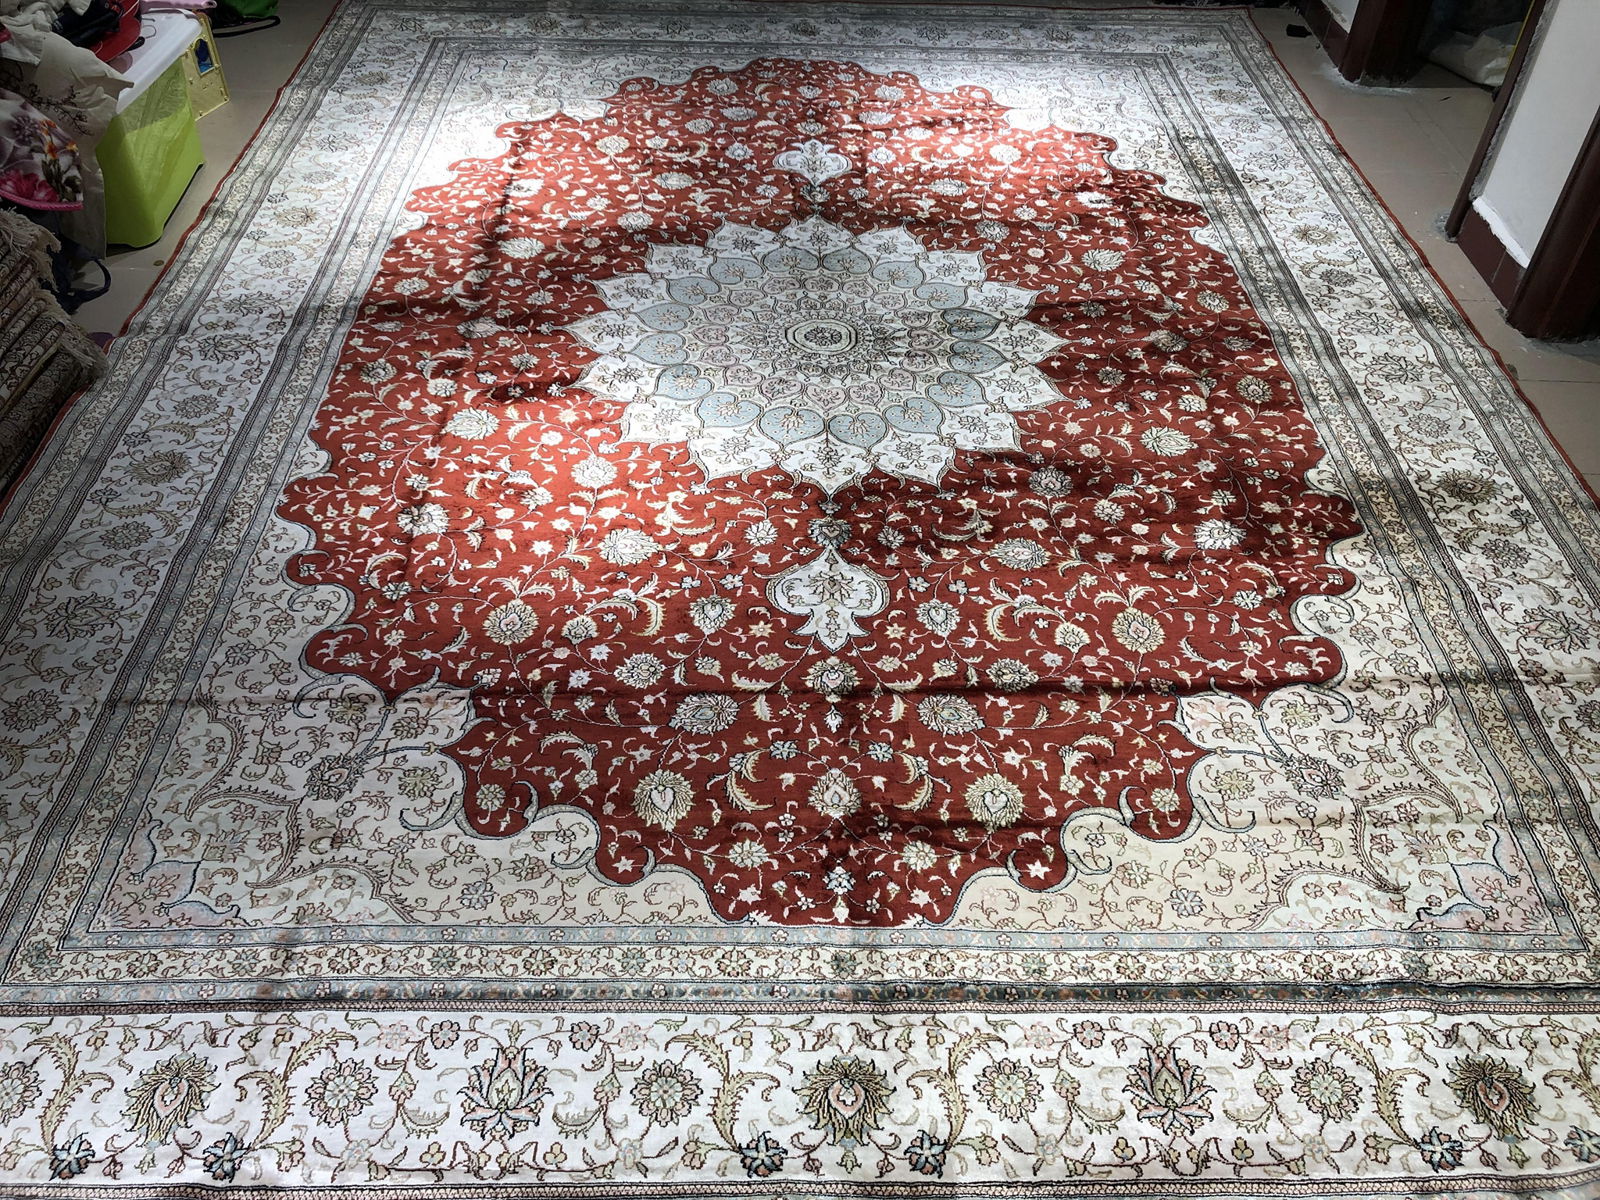 亚美地毯厂生产豪华手工9x12ft真丝波斯风格地毯